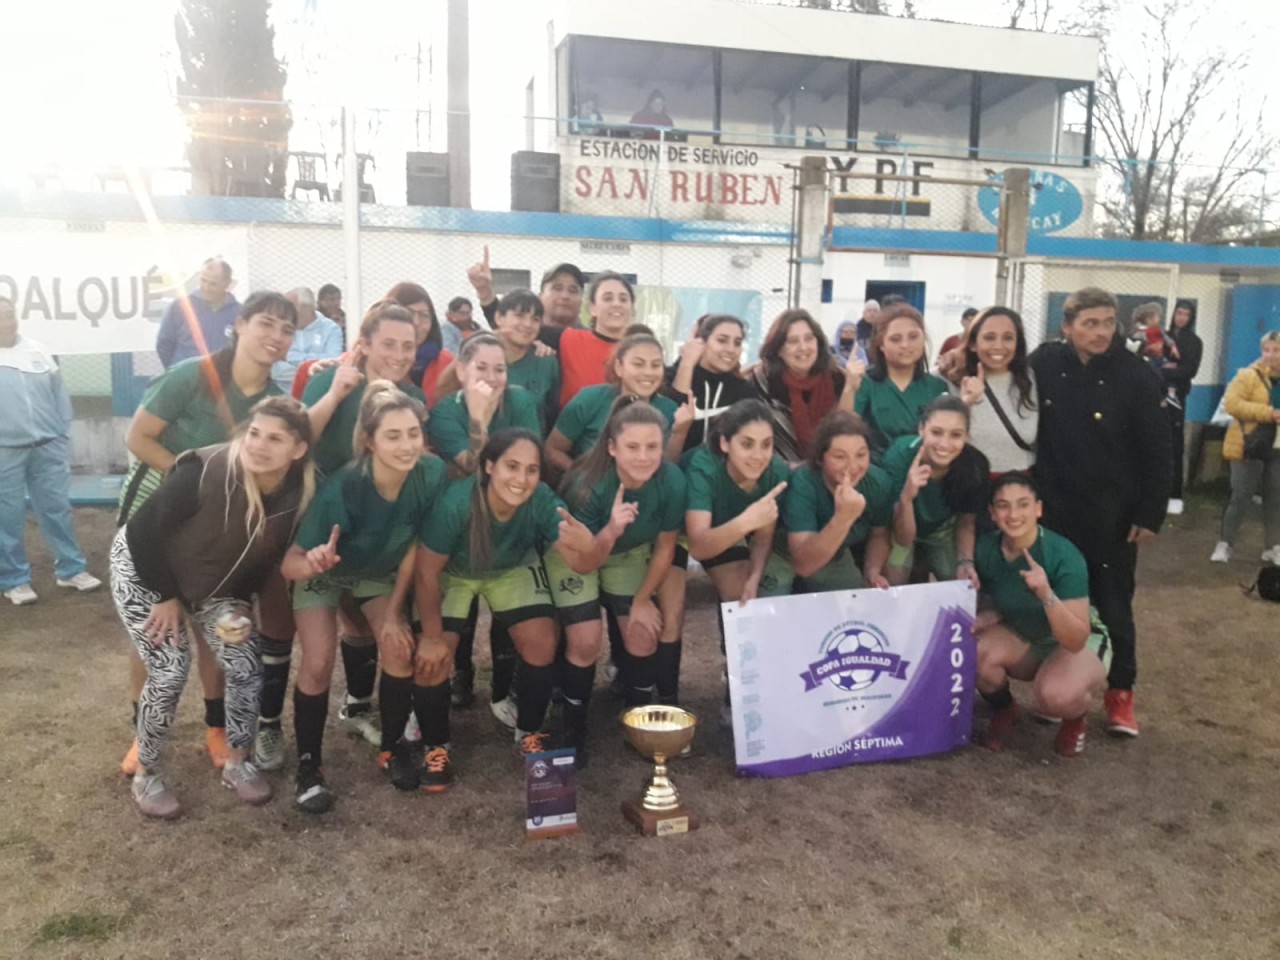 Olavarría 1 se consagró campeón de la Copa Igualdad 